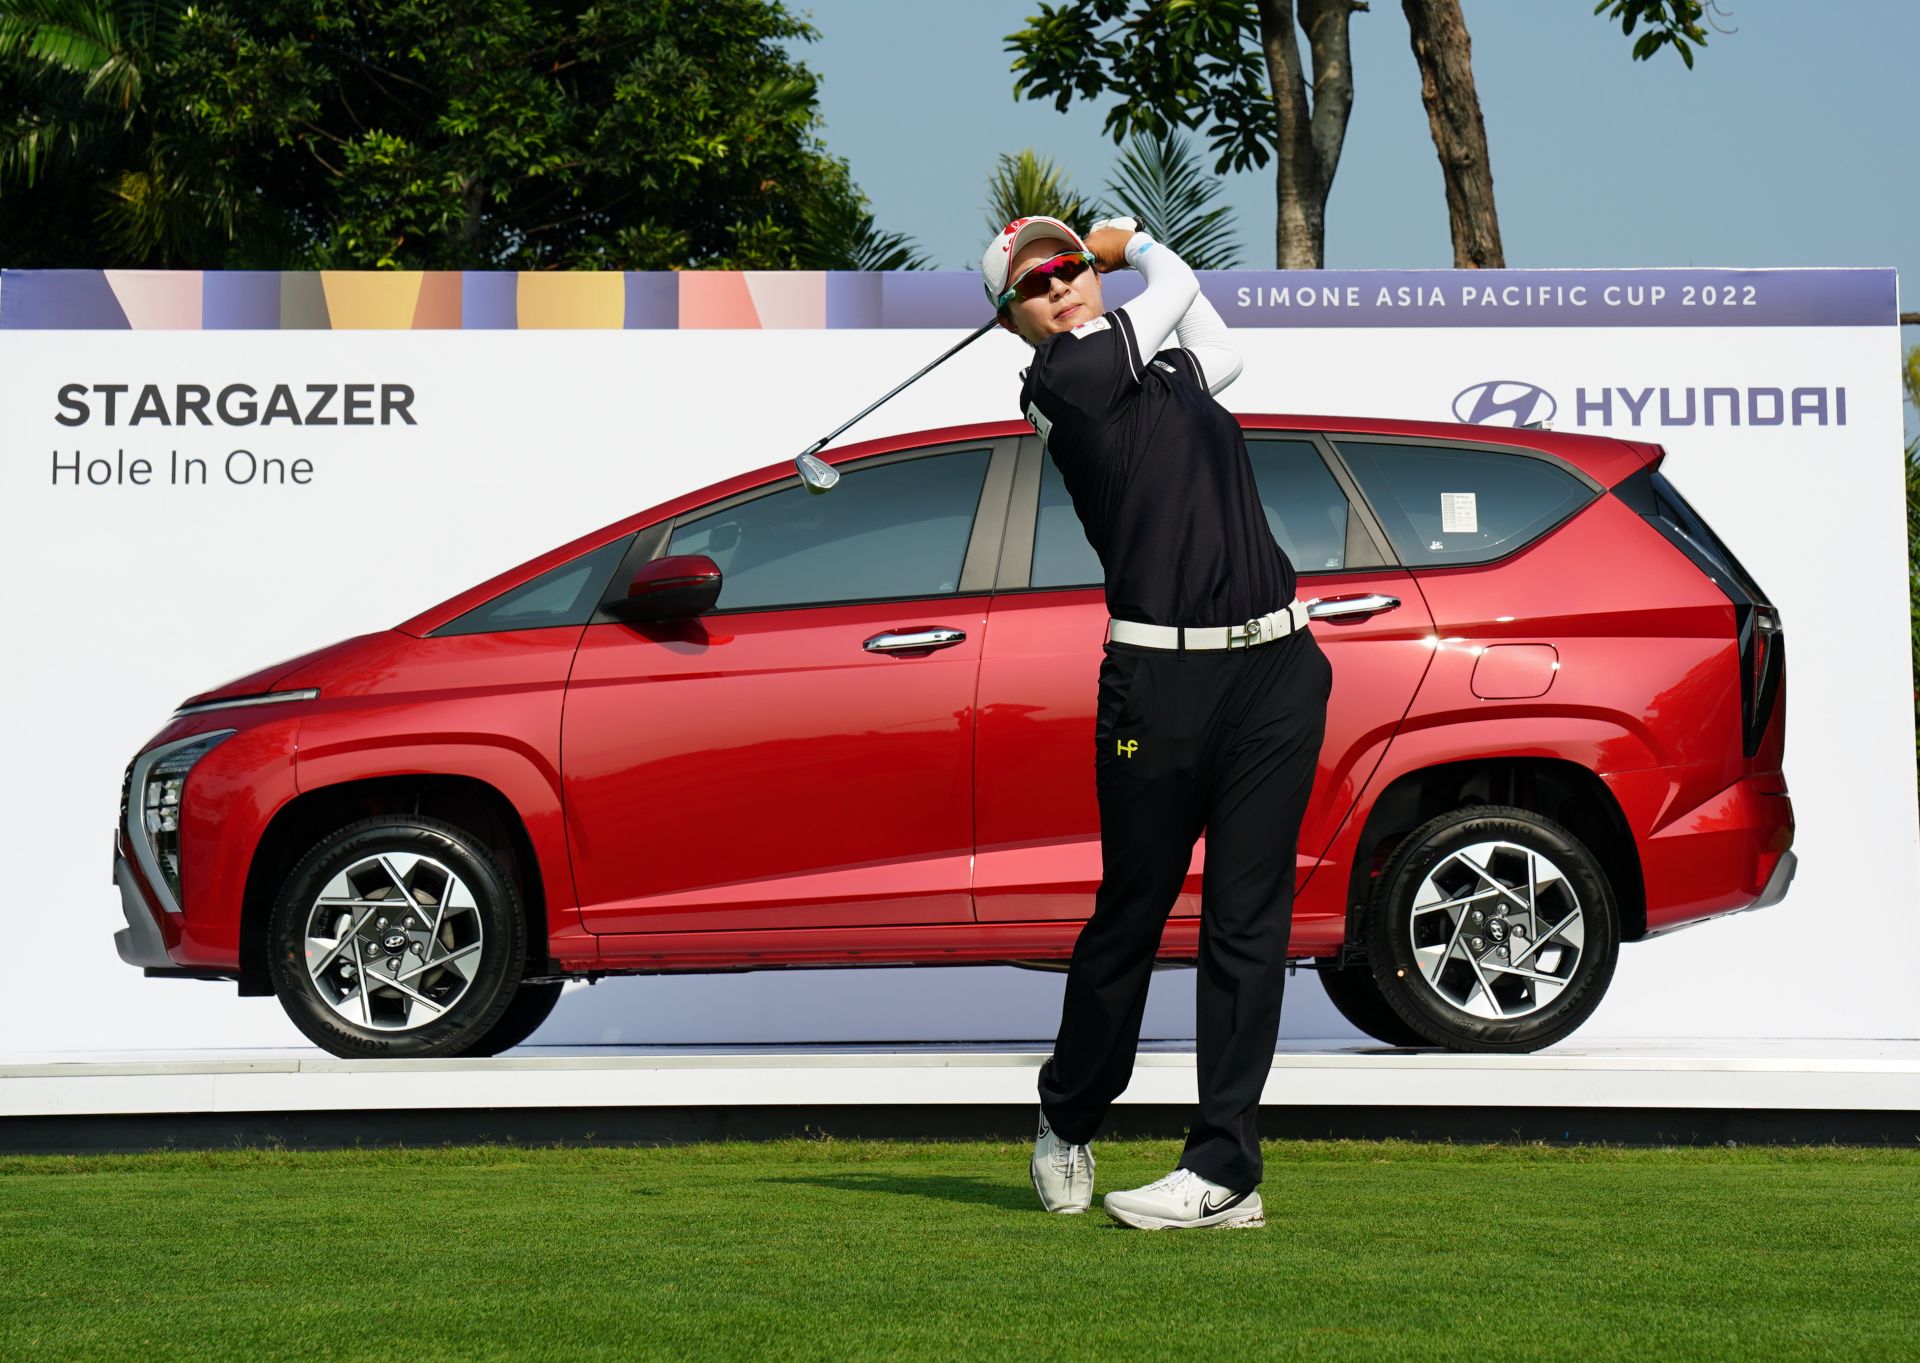 Hyundai STARGAZER Menjadi Kendaraan Resmi untuk Turnamen Golf Simone Asia Pacific Cup 2022 di Jakarta